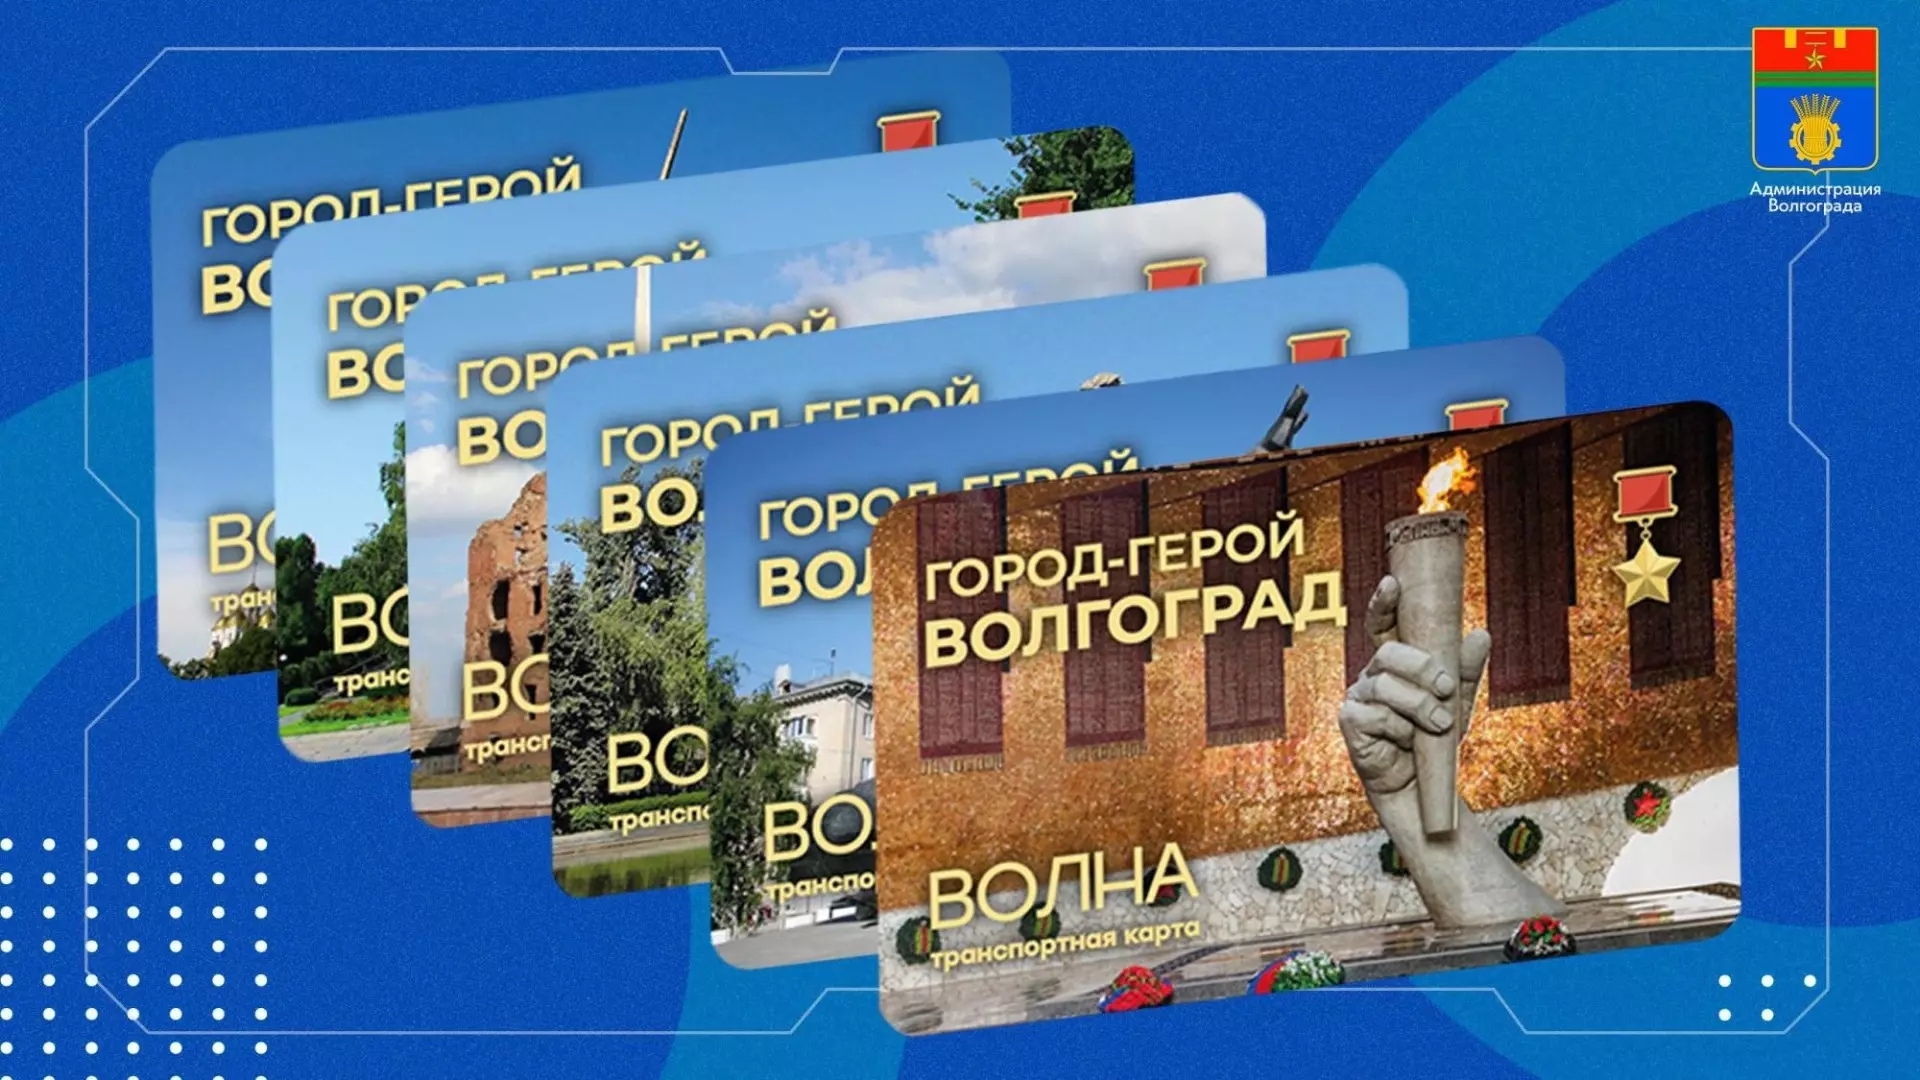 Транспортные карты в редком дизайне выпустят к годовщине Победы в Волгограде